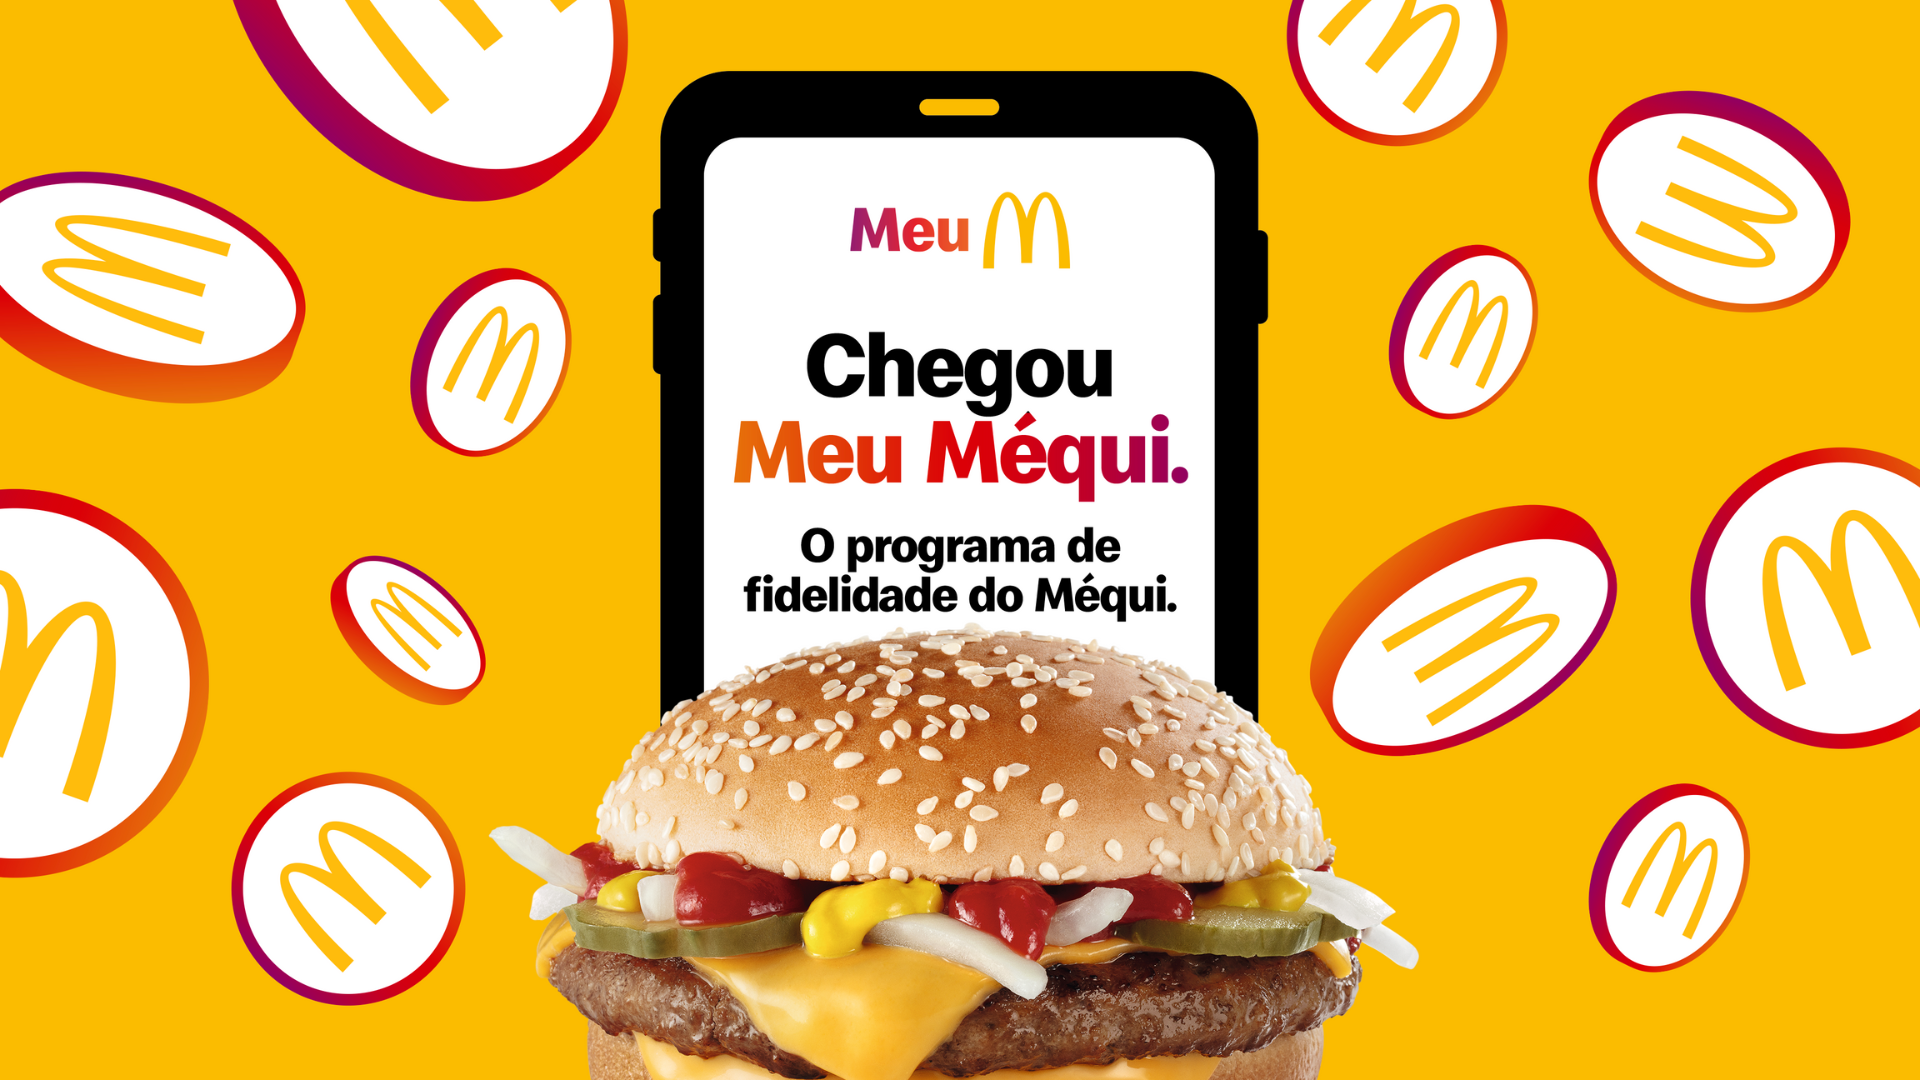 [Brasil] Meu Méqui: McDonald’s lança programa de fidelidade para retribuir a lealdade dos consumidores